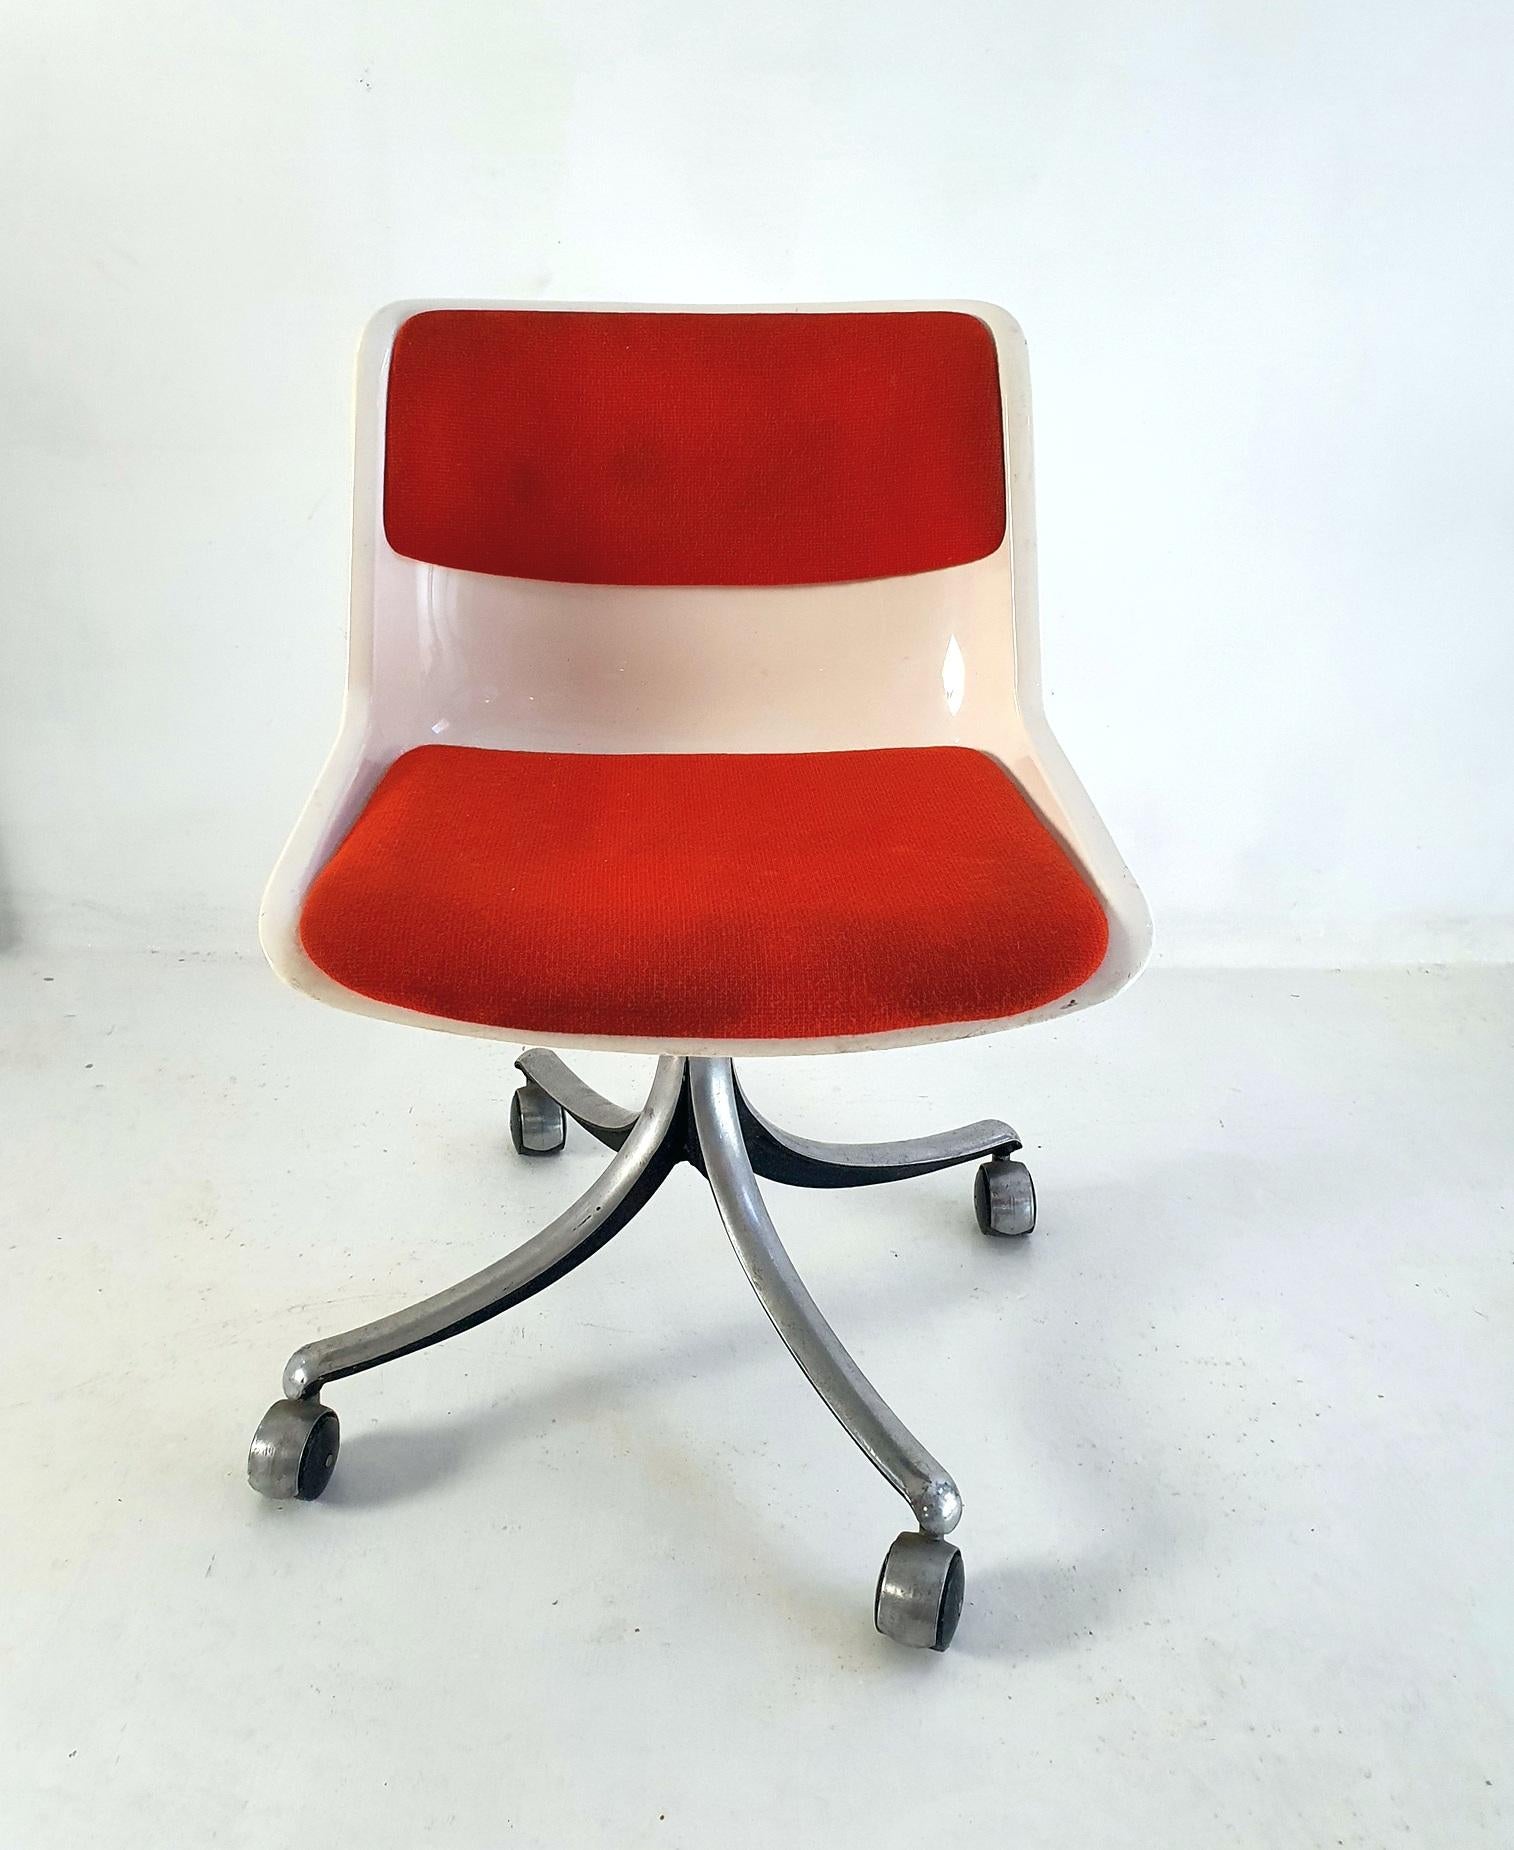 Chaise de bureau pivotante en plastique blanc cassé avec tissu en laine orange/rouge reposant sur une base en aluminium avec les roulettes d'origine qui fonctionne bien. Conçu par Osvaldo Borsani pour Tecno dans les années 1970. Ce modèle est fixe